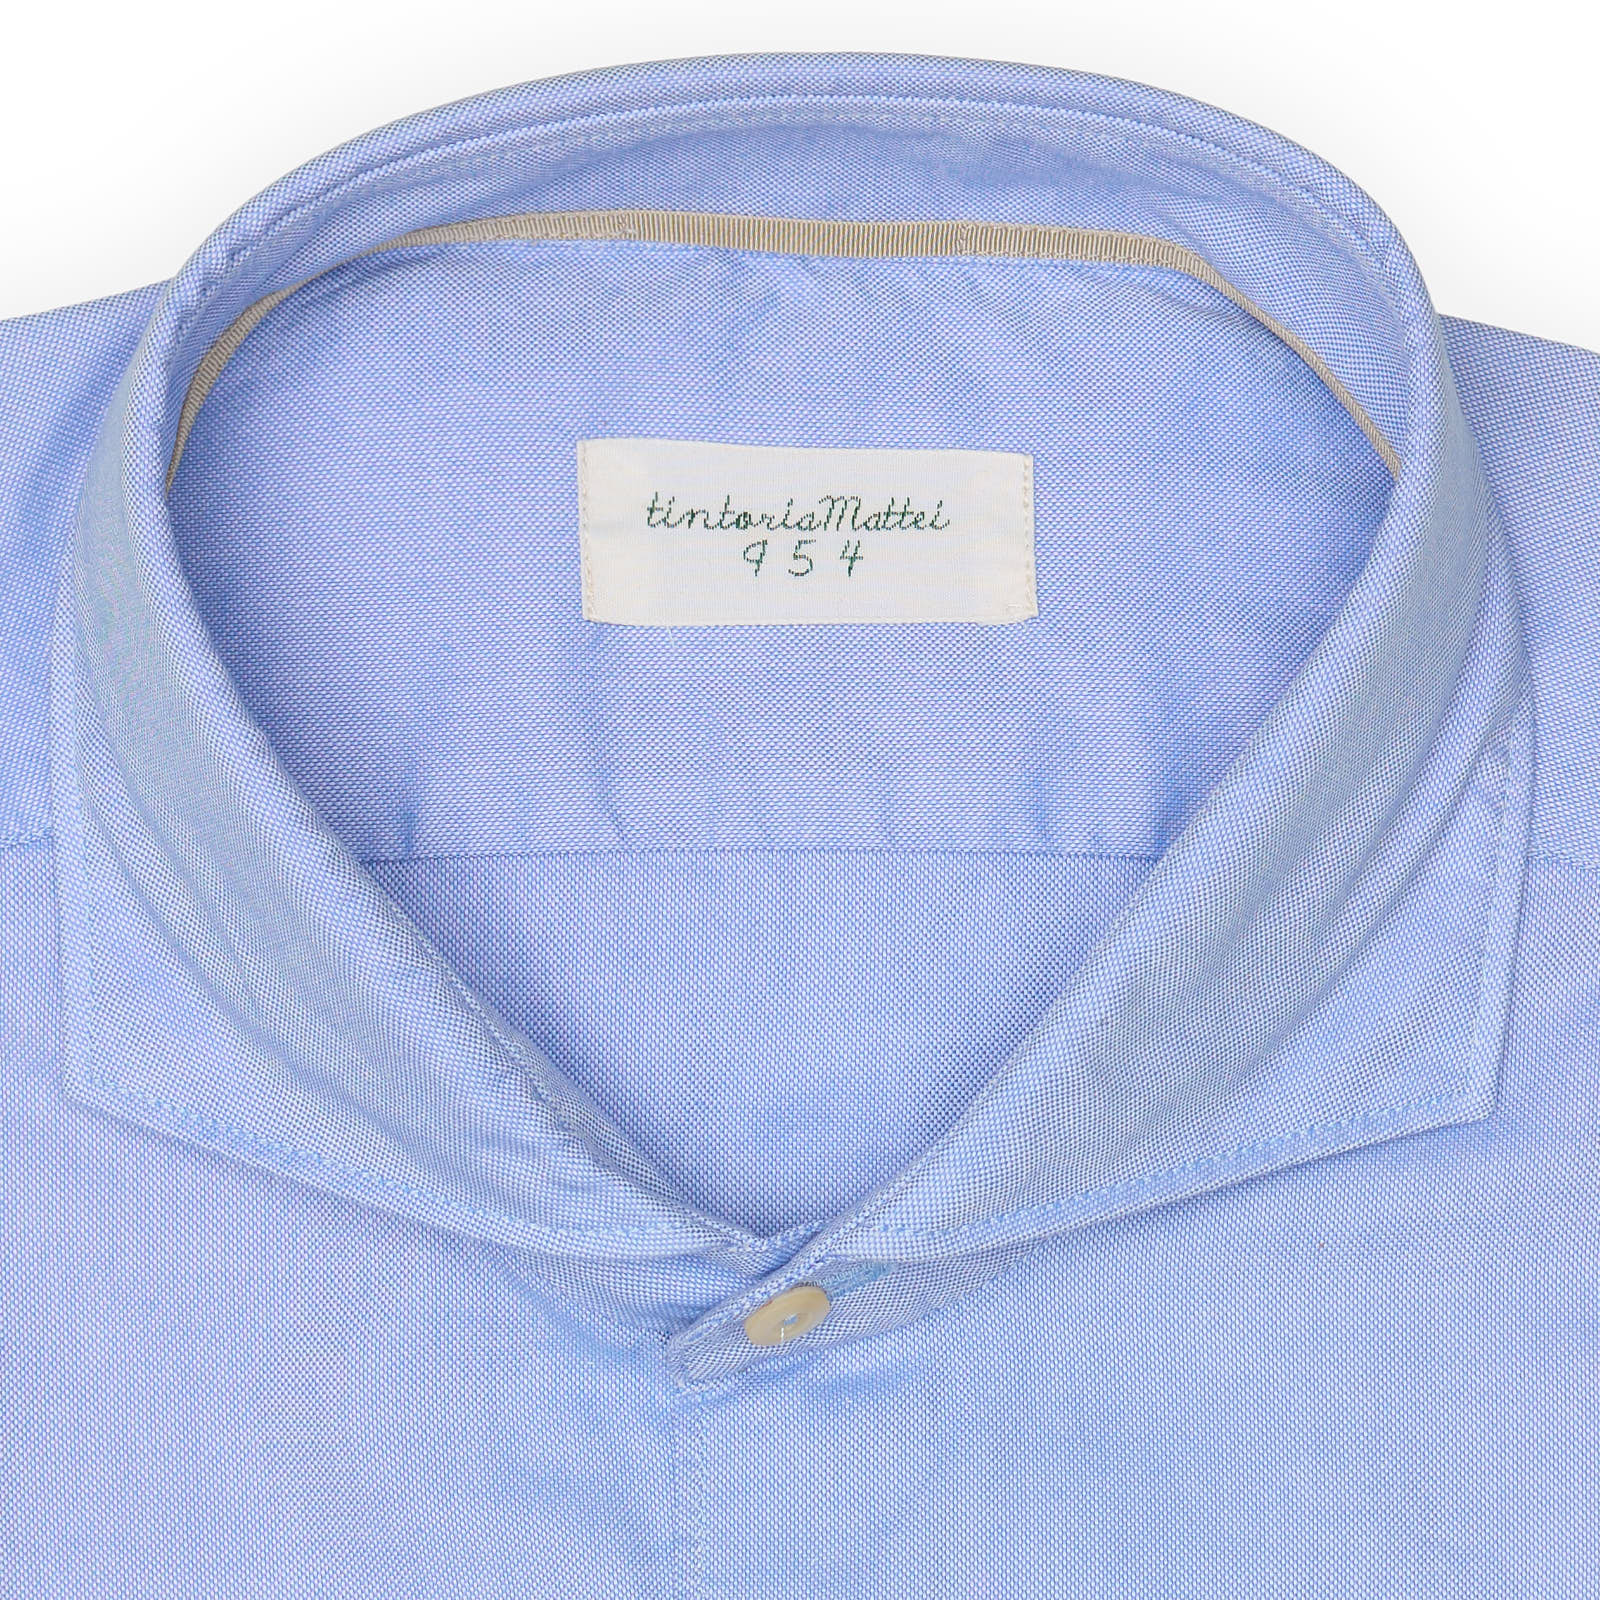 TINTORIA MATTEI 954 Blue Oxford Cotton Dress Shirt EU 43 NEW US 17